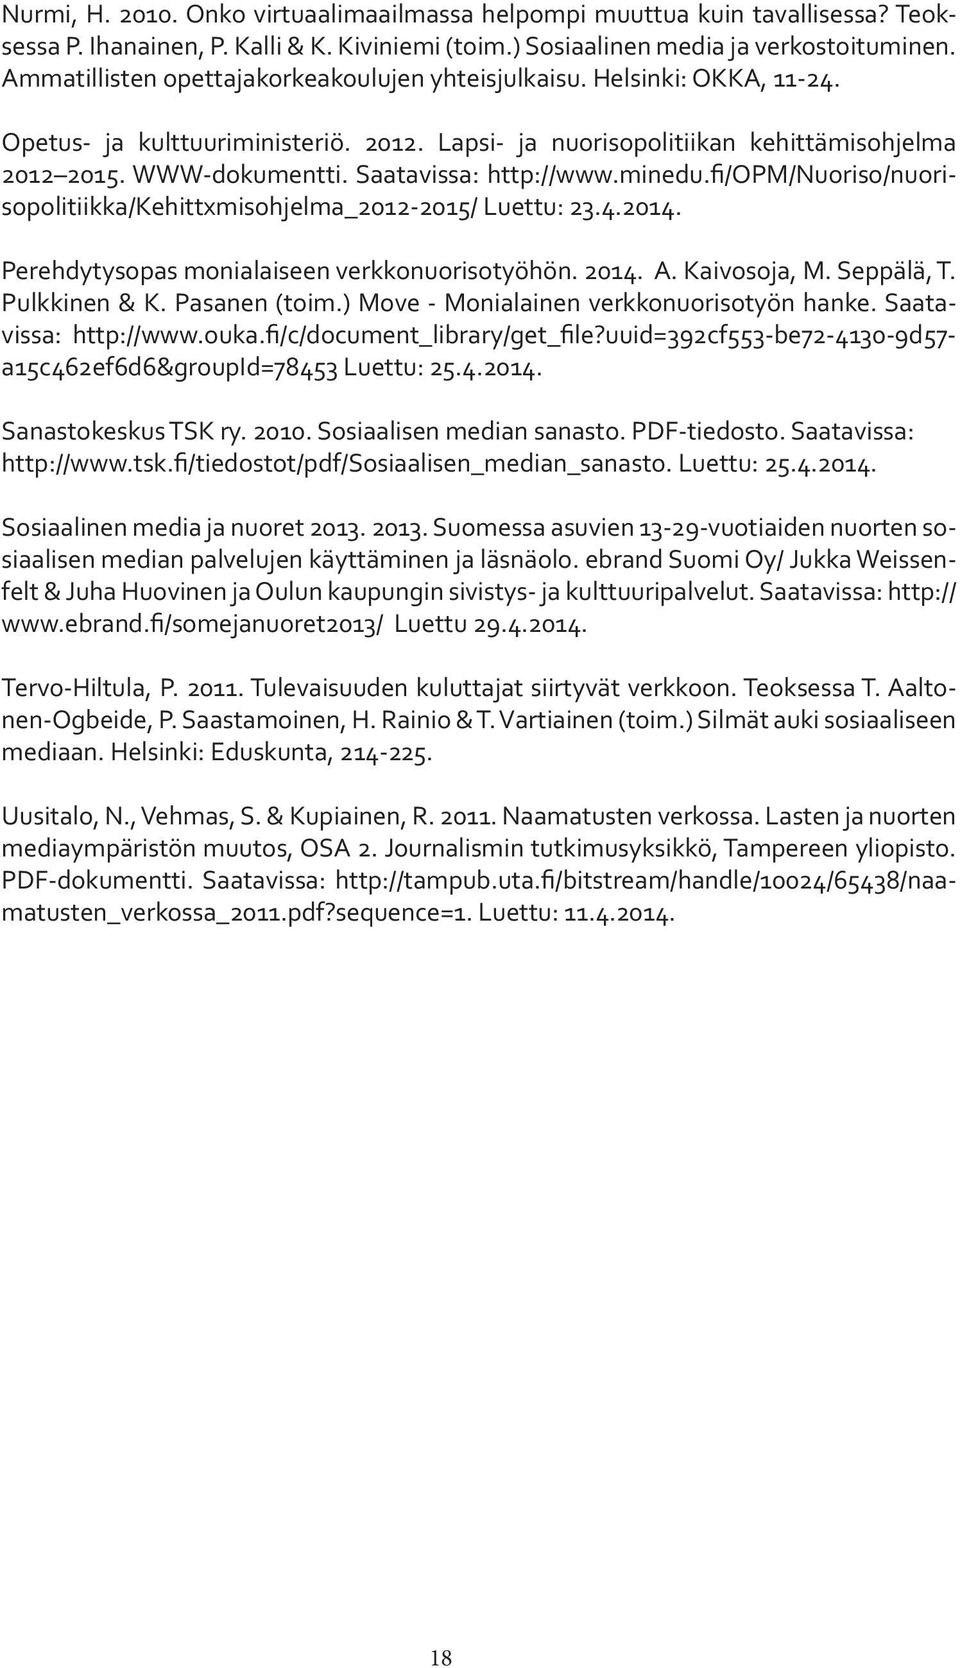 Saatavissa: http://www.minedu.fi/opm/nuoriso/nuorisopolitiikka/kehittxmisohjelma_2012-2015/ Luettu: 23.4.2014. Perehdytysopas monialaiseen verkkonuorisotyöhön. 2014. A. Kaivosoja, M. Seppälä, T.